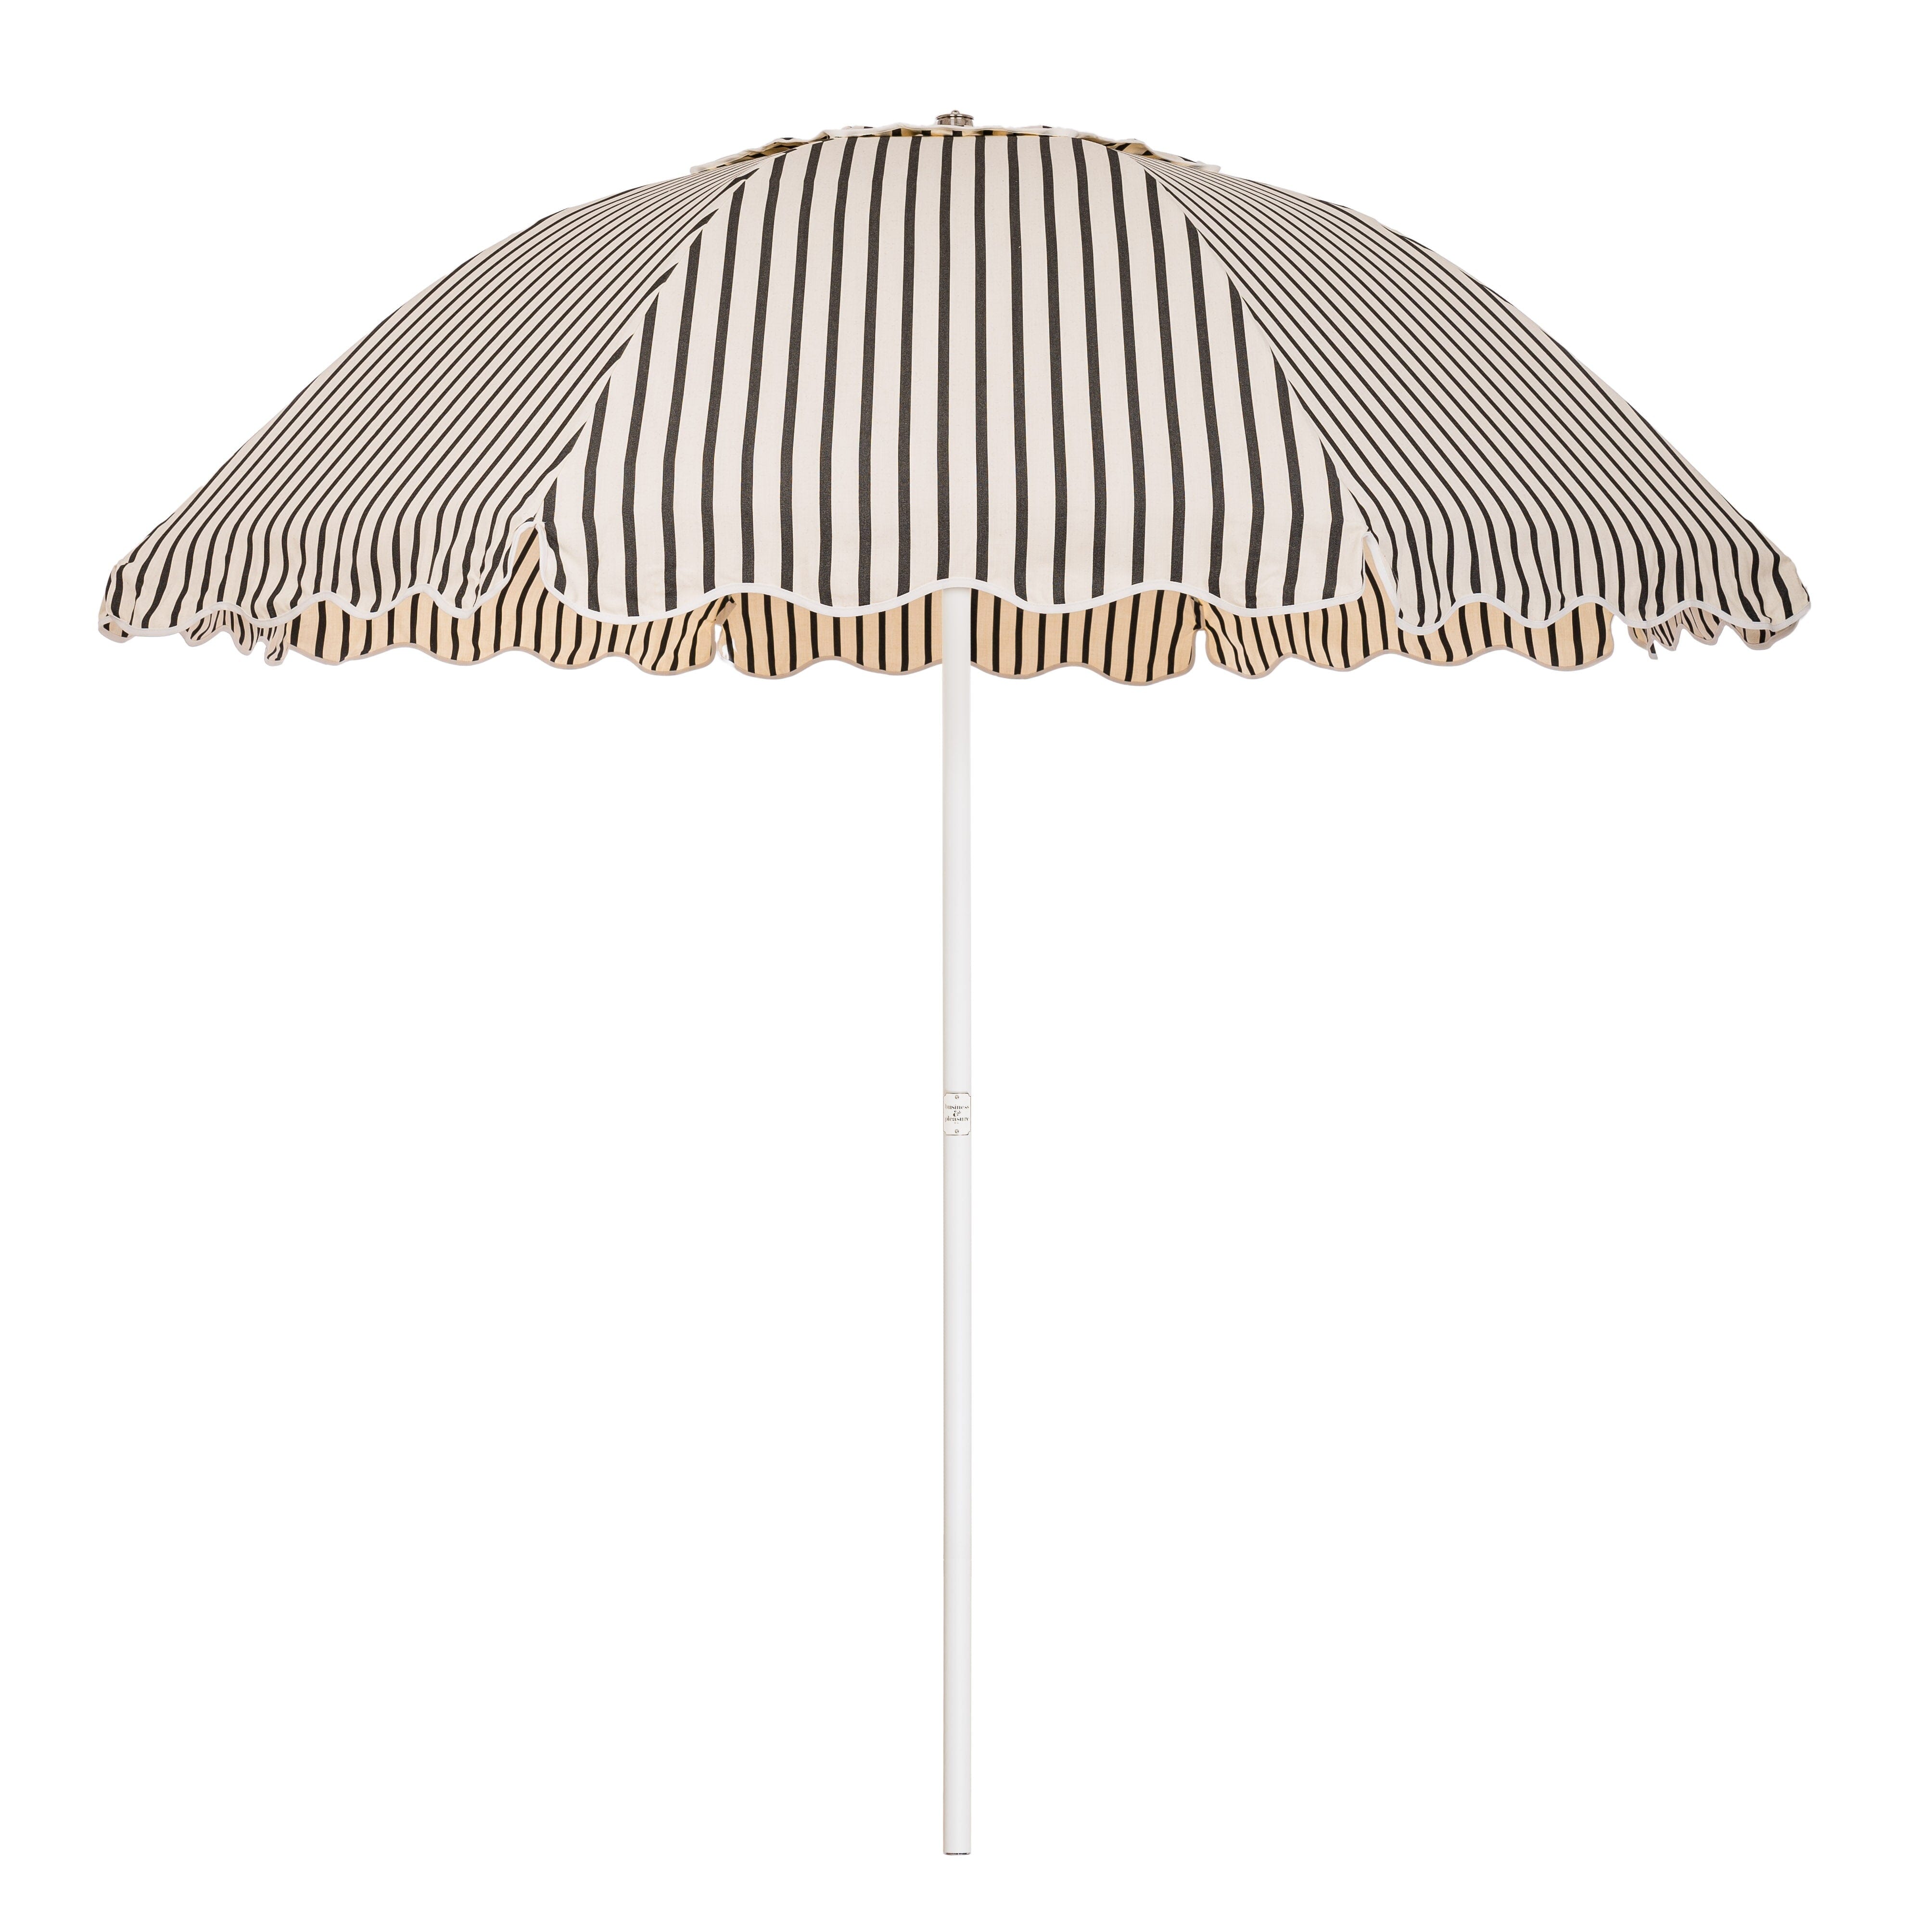 The Patio Umbrella - Monaco Black Stripe Patio Umbrella Business & Pleasure Co 